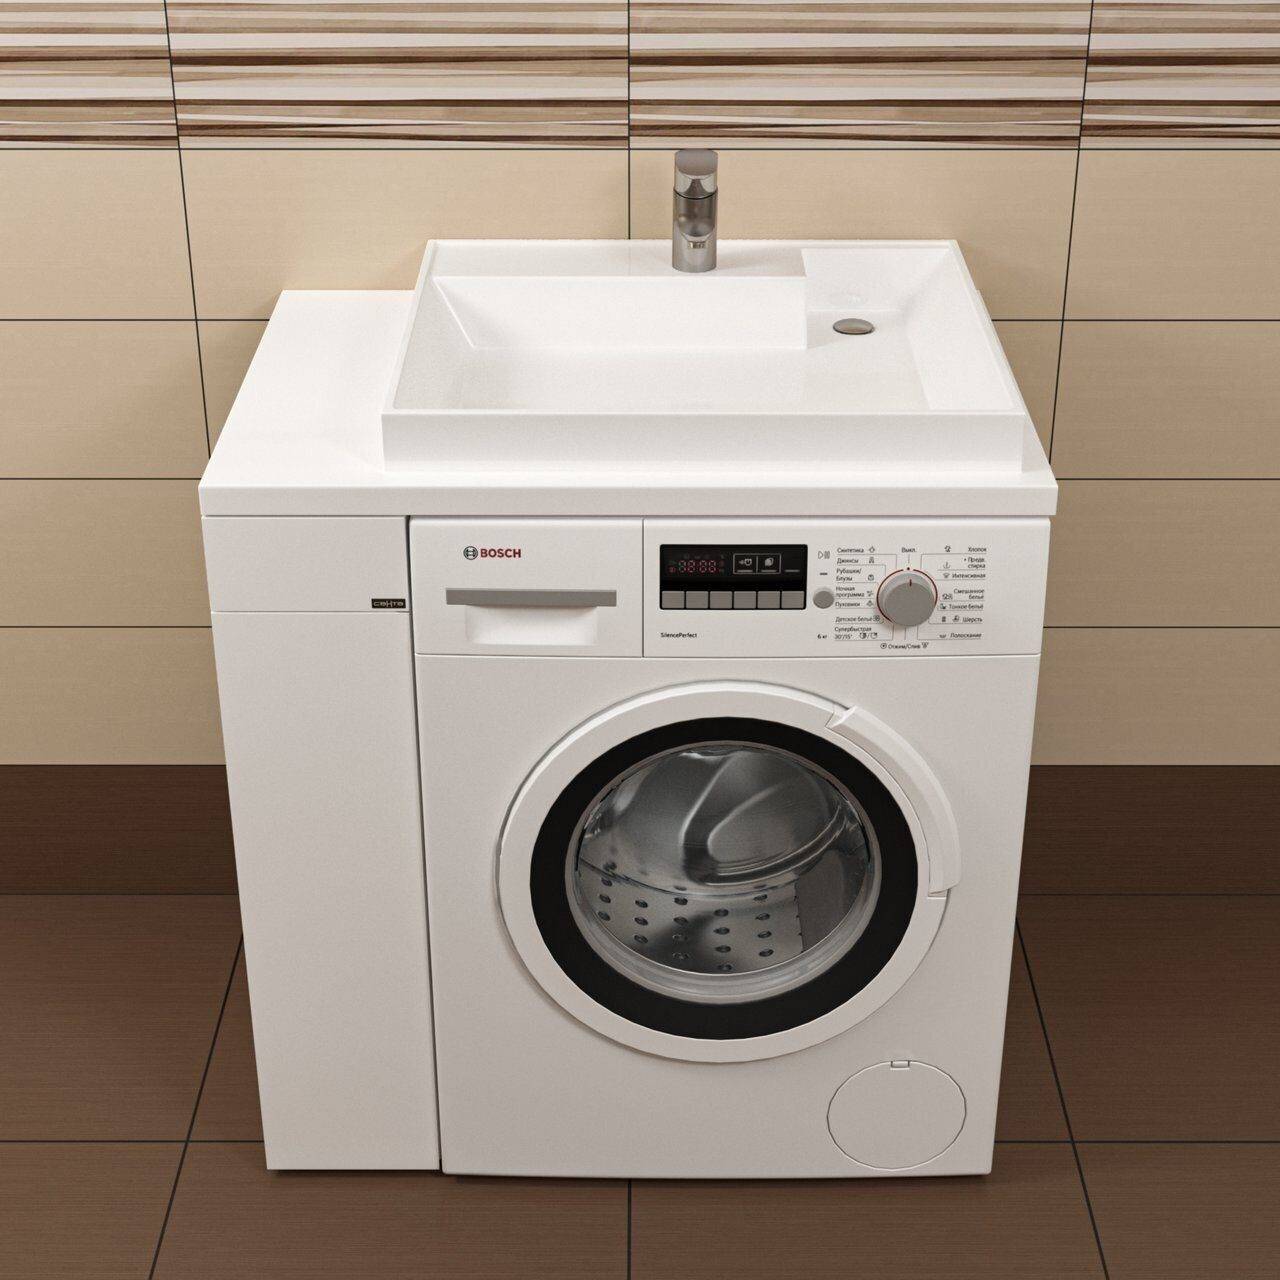 ????как выбрать лучшую стиральную машину под раковину на 2022 год?